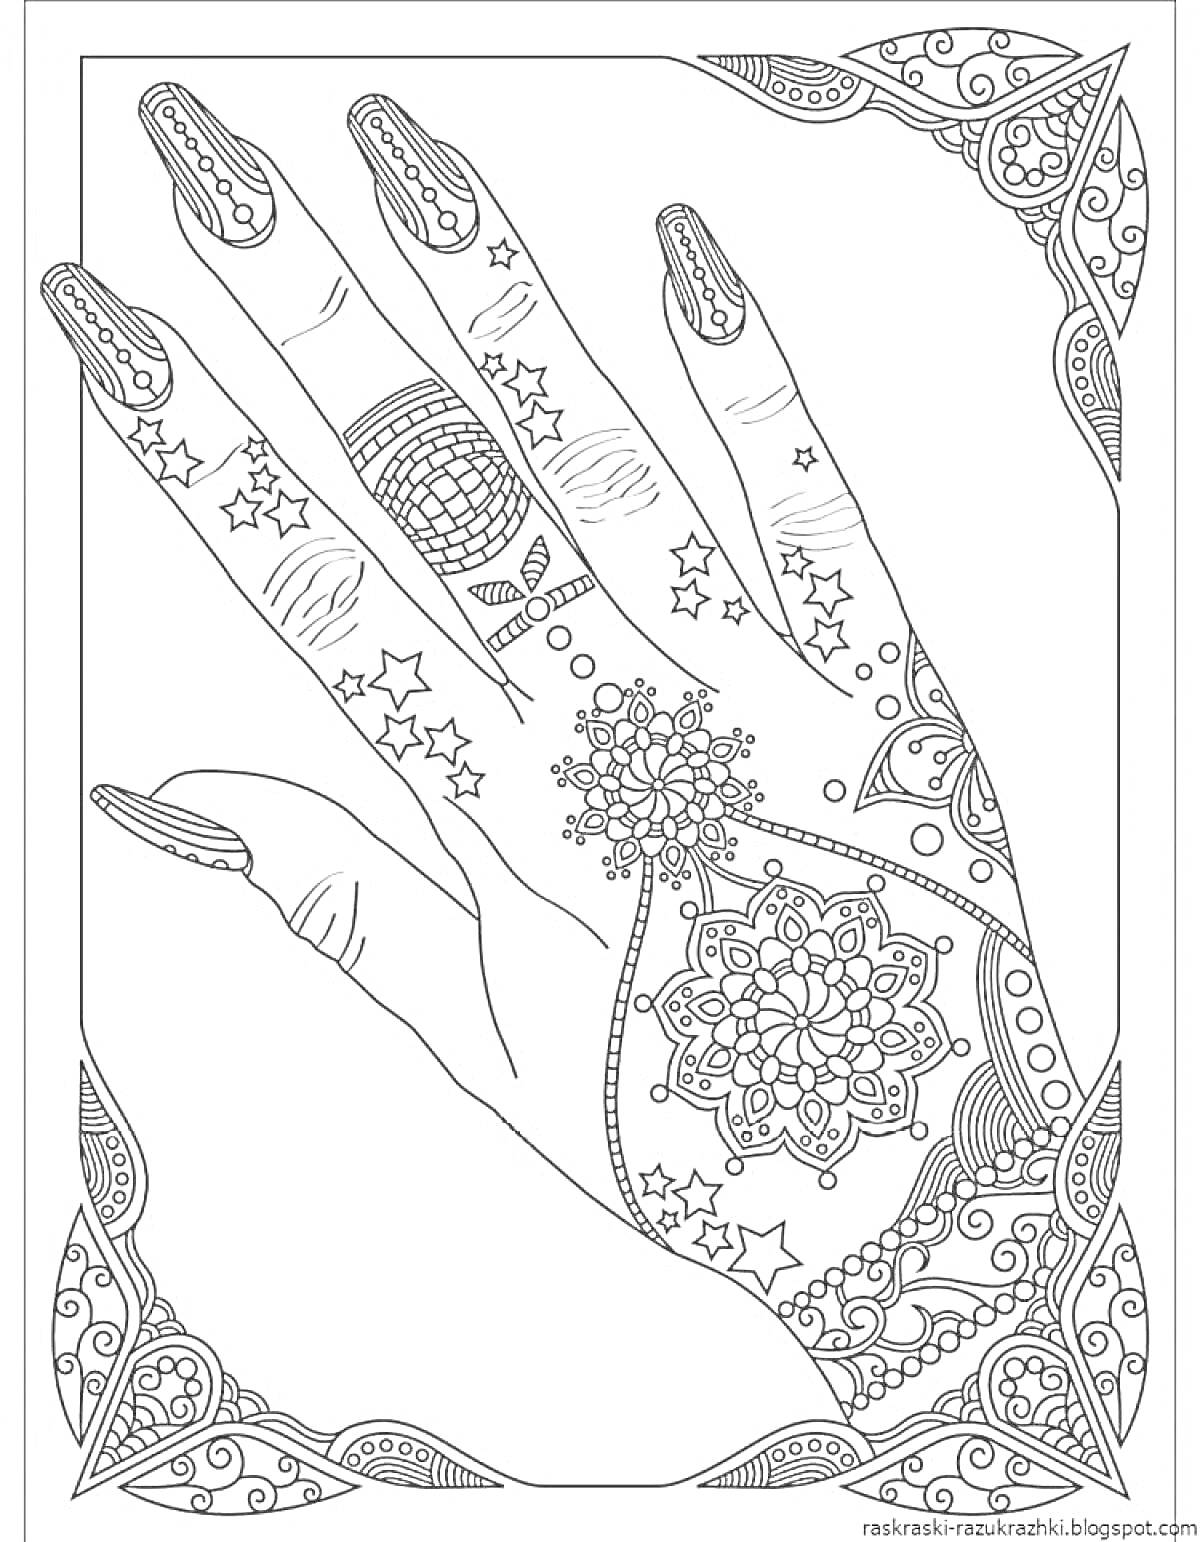 Раскраска рука с узорами на коже и украшенными ногтями, со звёздами и цветочными элементами